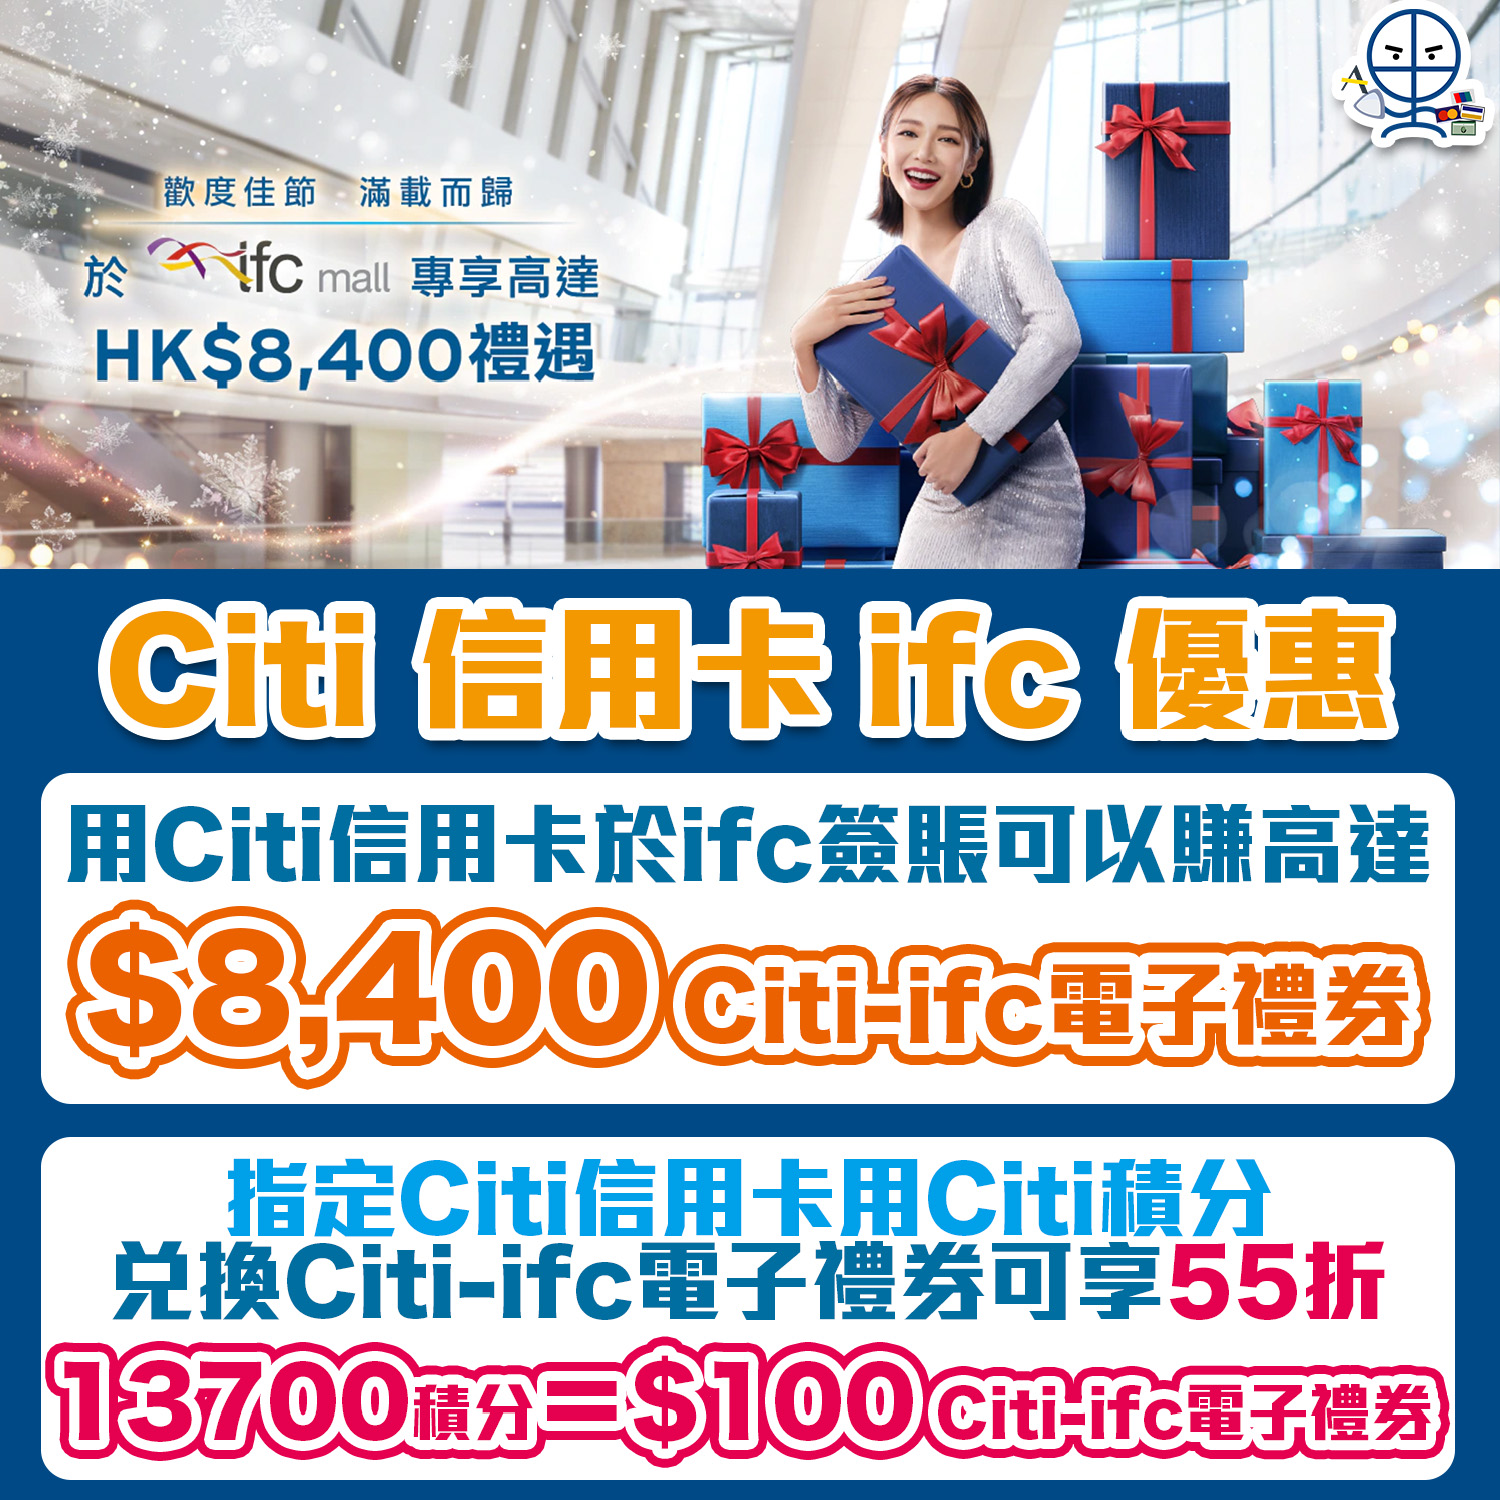 【Citi ifc優惠】憑Citi信用卡於ifc簽賬賺高達HK$8,400 Citi-ifc電子禮券+55折兌換Citi-ifc電子禮券！